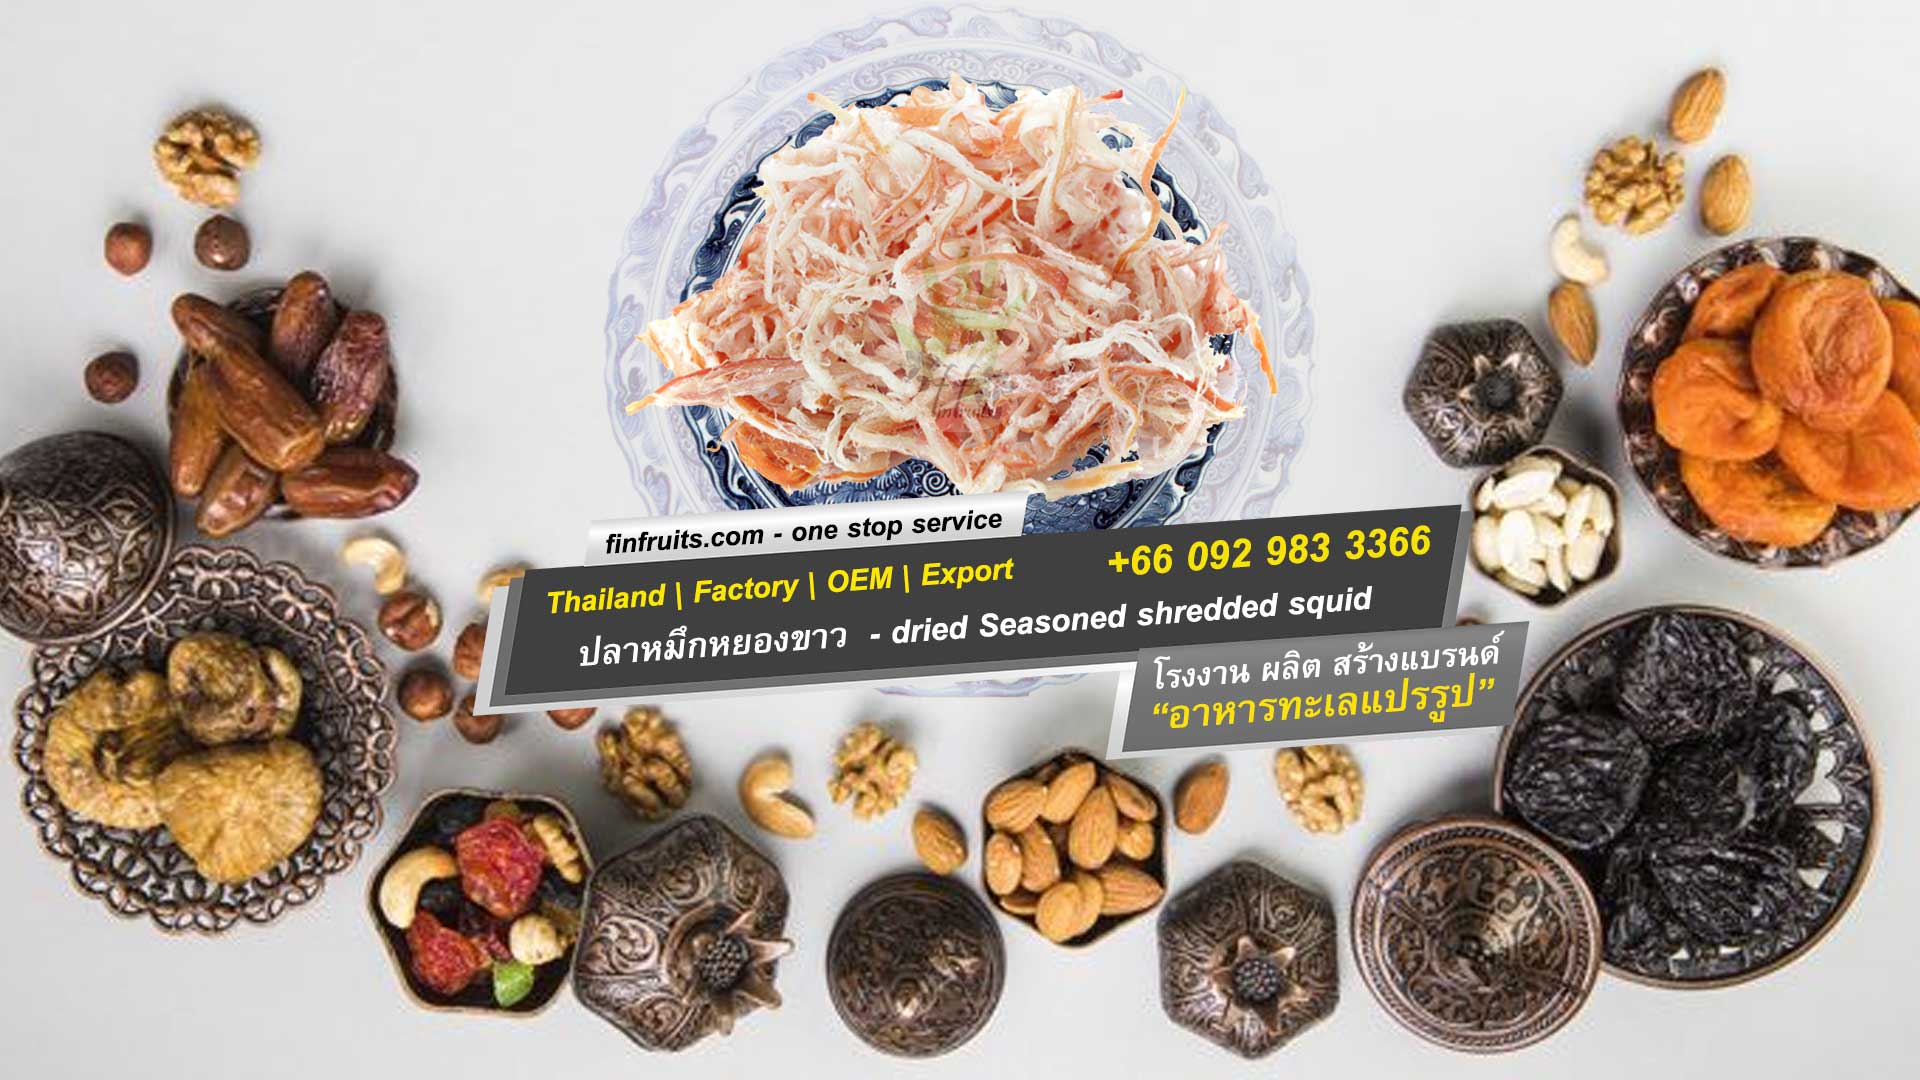 อาหาร ทะเลแห้ง ปลาหมึกหยองขาว Dried white seasoned shredded squid (Processed) ขาย|ขายส่ง|ตัวแทน|โรงงาน|ผลิต|oem ตลาด มหาชัย|มหานาค|เพชรบุรี